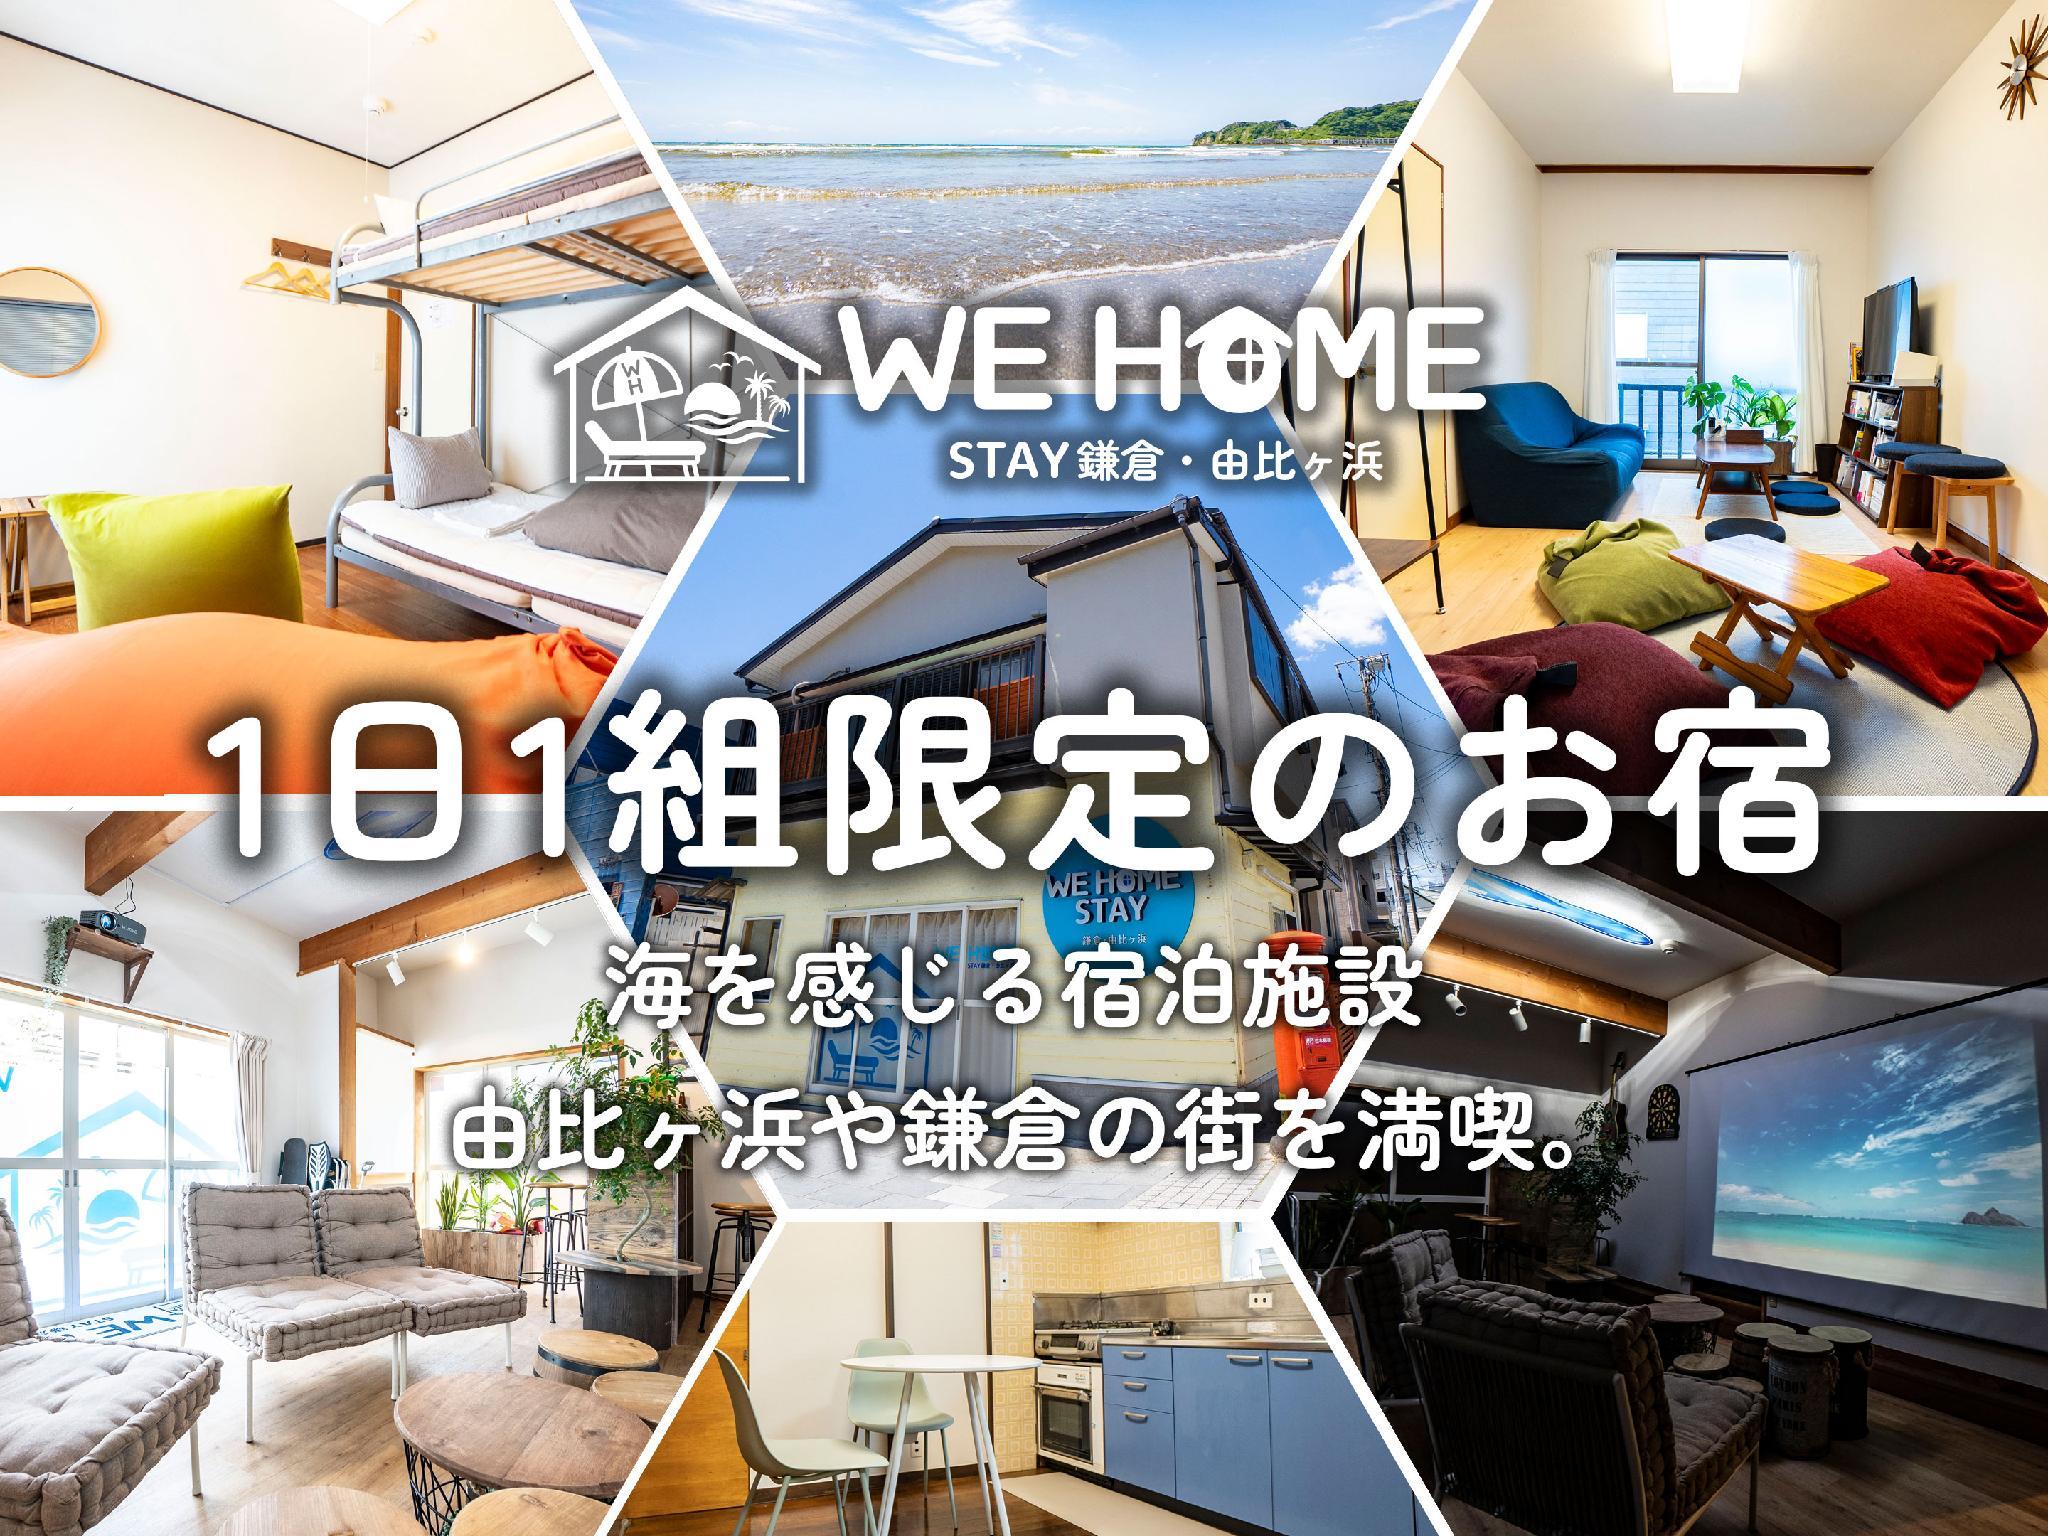 We Home Stay 鎌倉・由比ガ浜 - Kamakura